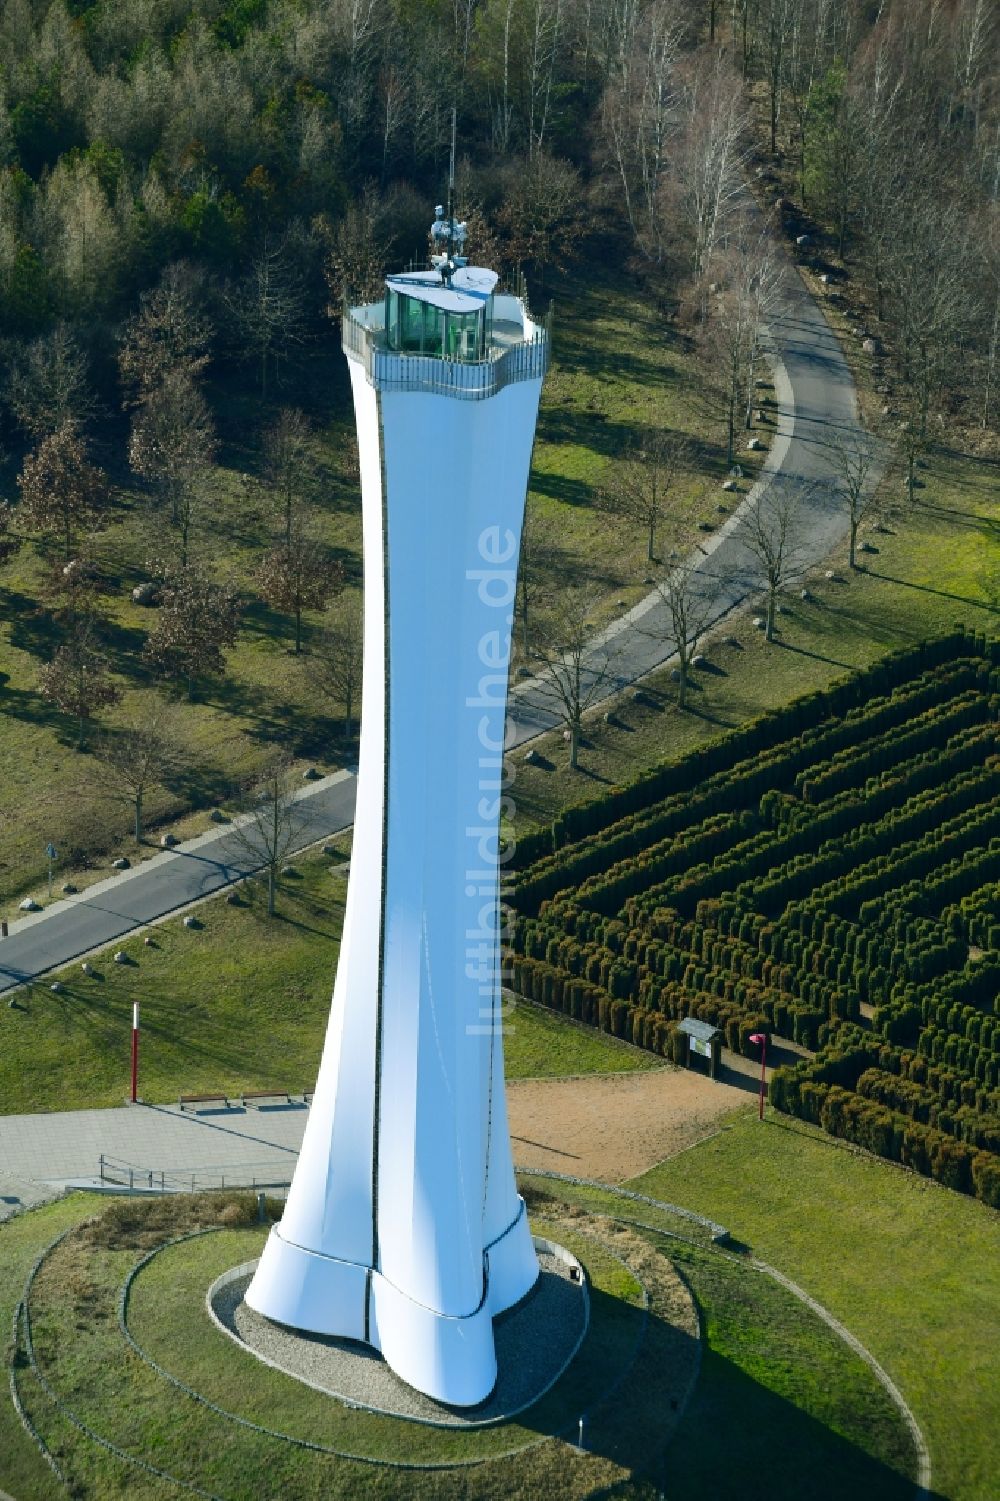 Luftbild Teichland - Bauwerk des Aussichtsturmes Bärenbrücker Höhe in Teichland im Bundesland Brandenburg, Deutschland